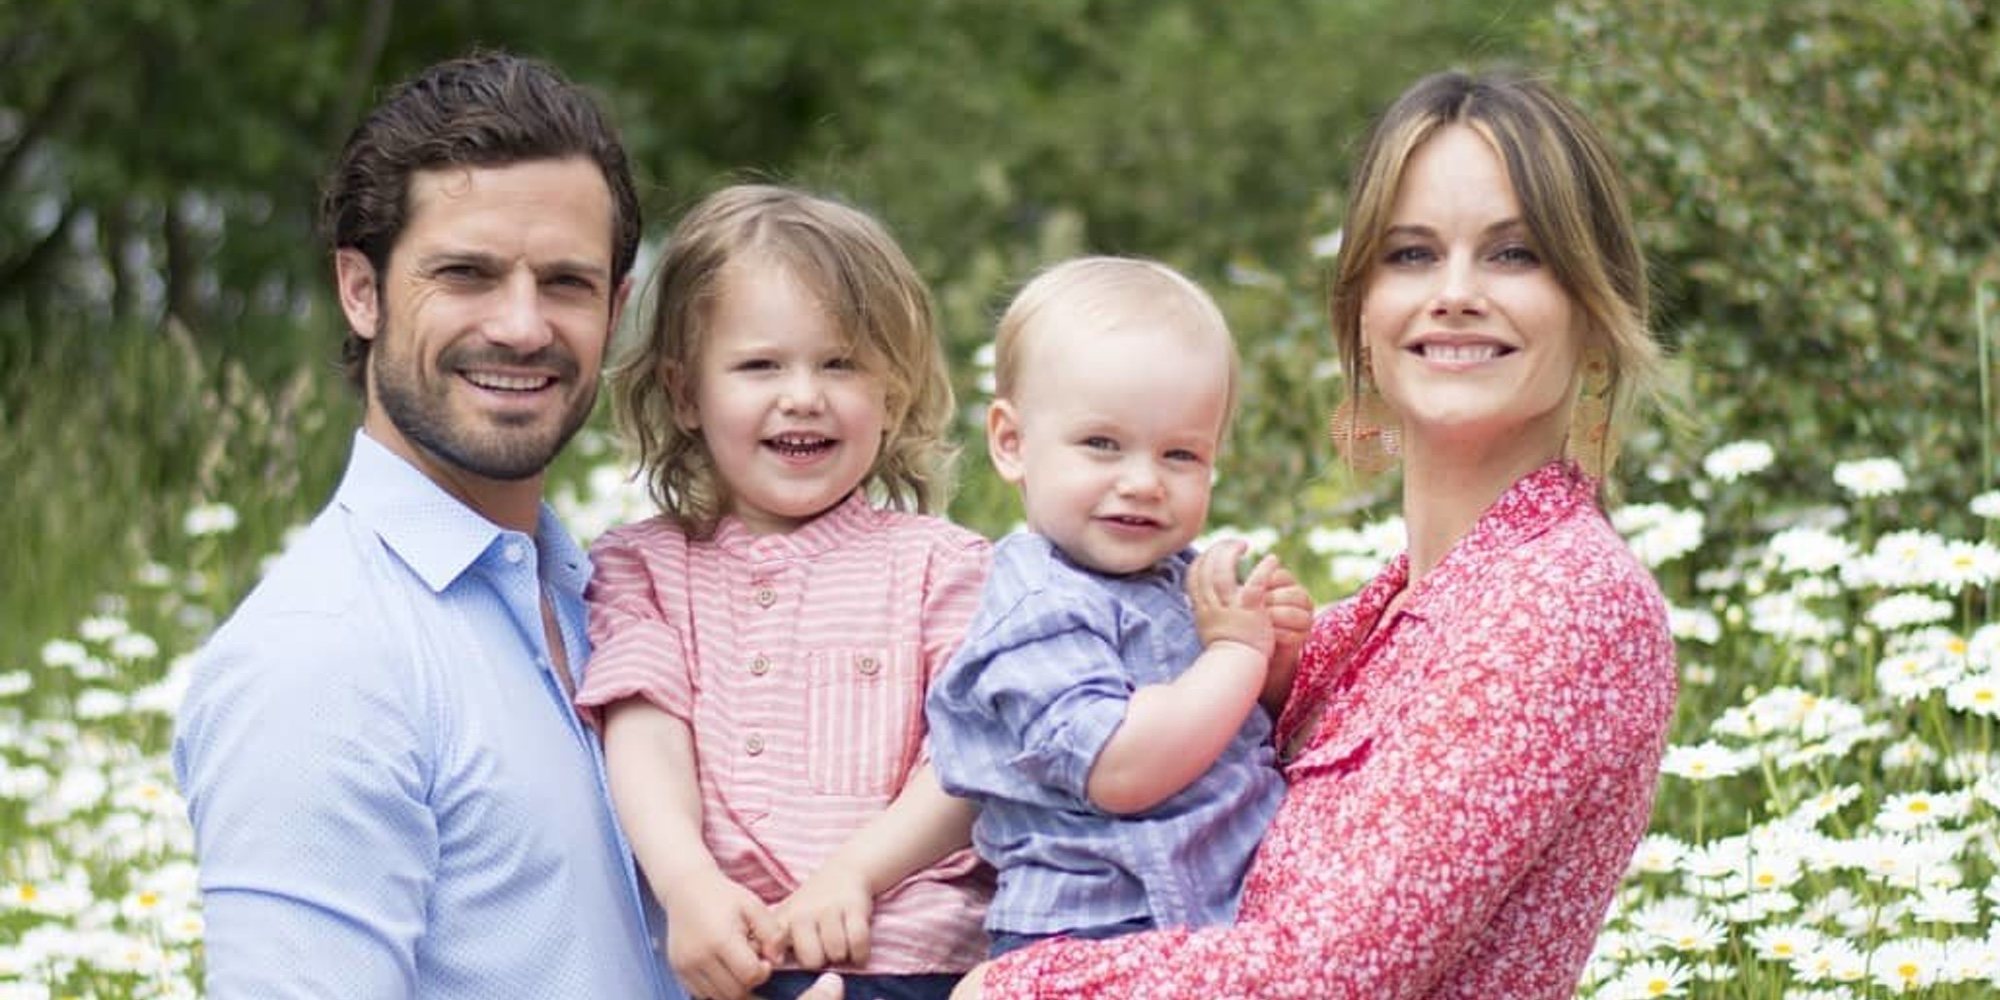 El día de campo y ciclismo del Príncipe Carlos Felipe y Sofia Hellqvist con sus hijos Alejandro y Gabriel